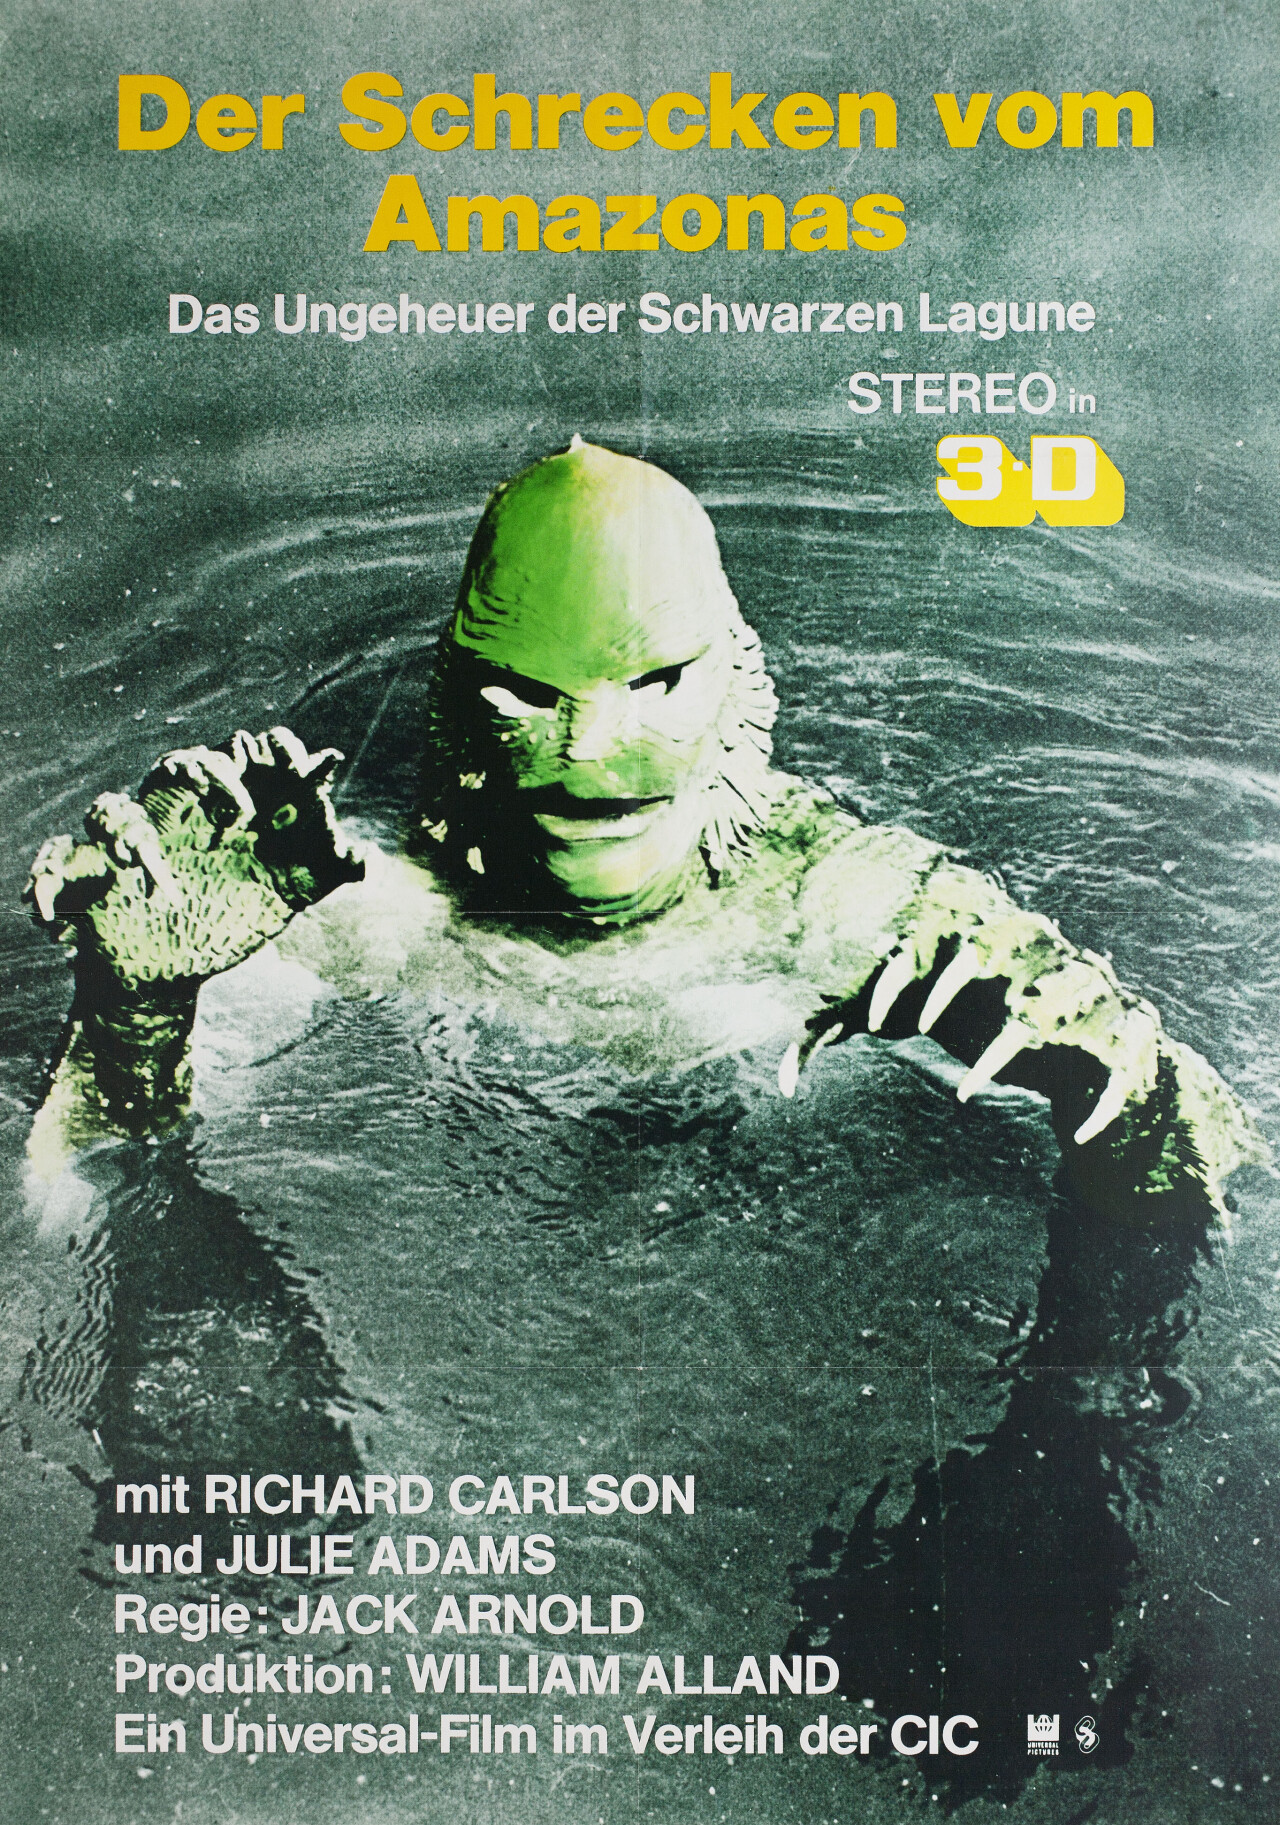 Тварь из Чёрной лагуны (Creature from the Black Lagoon, 1954), режиссёр Джек Арнольд, немецкий (ФРГ) постер к фильму (монстры, 1970 год)